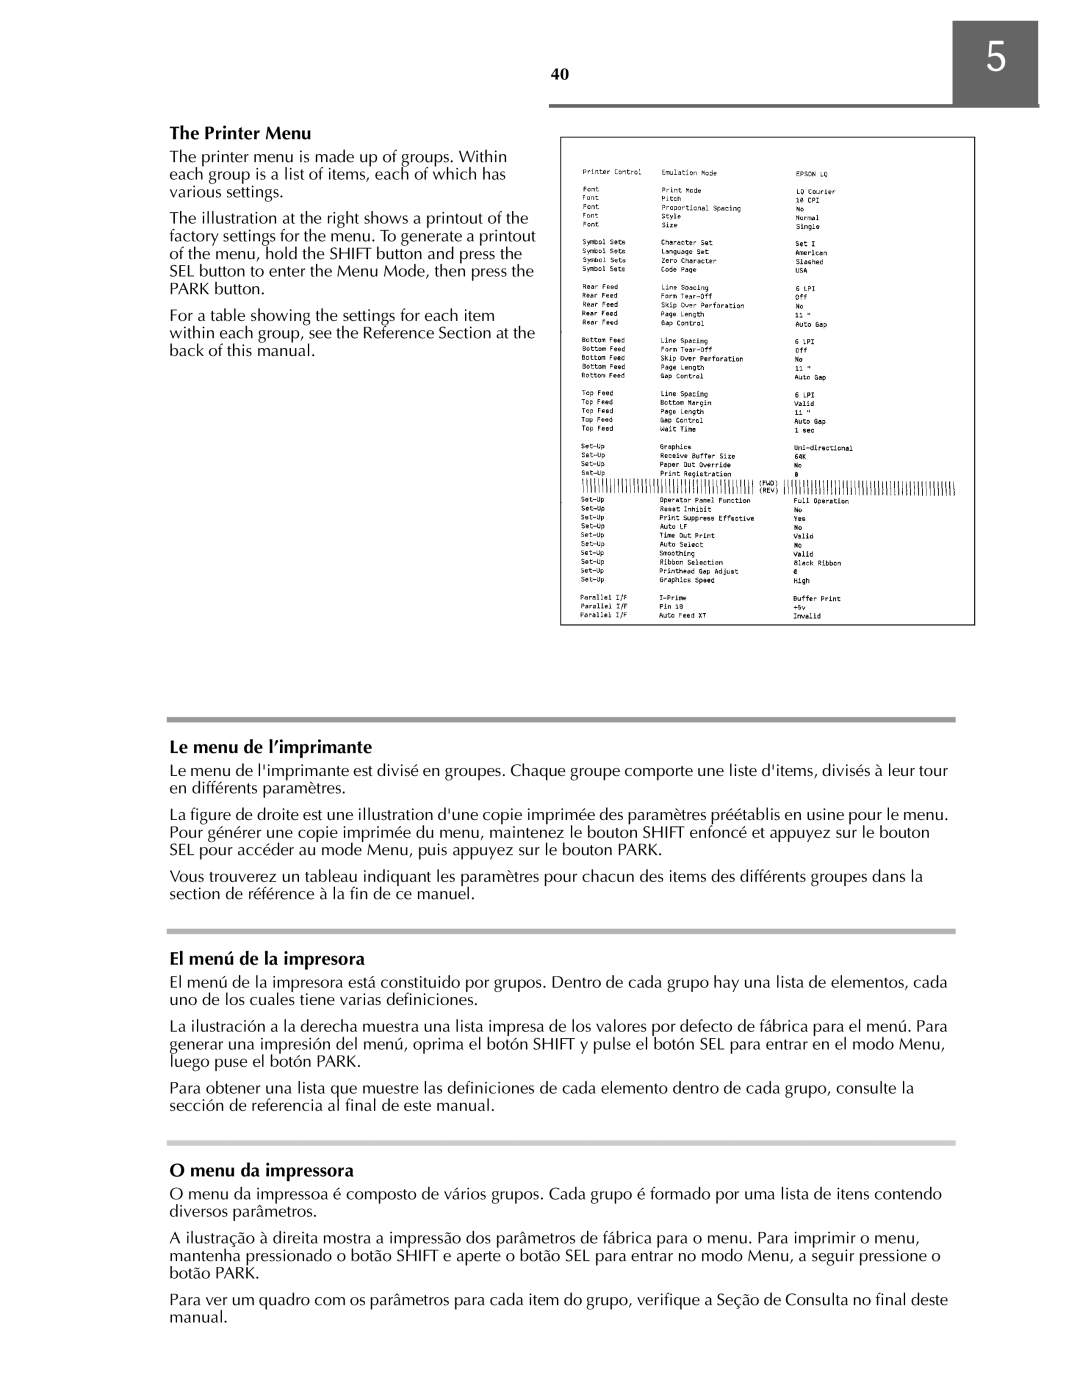 Oki ML590 manual sèç oólç, iç ó, El menú de la impresora, n ã˜ ó 